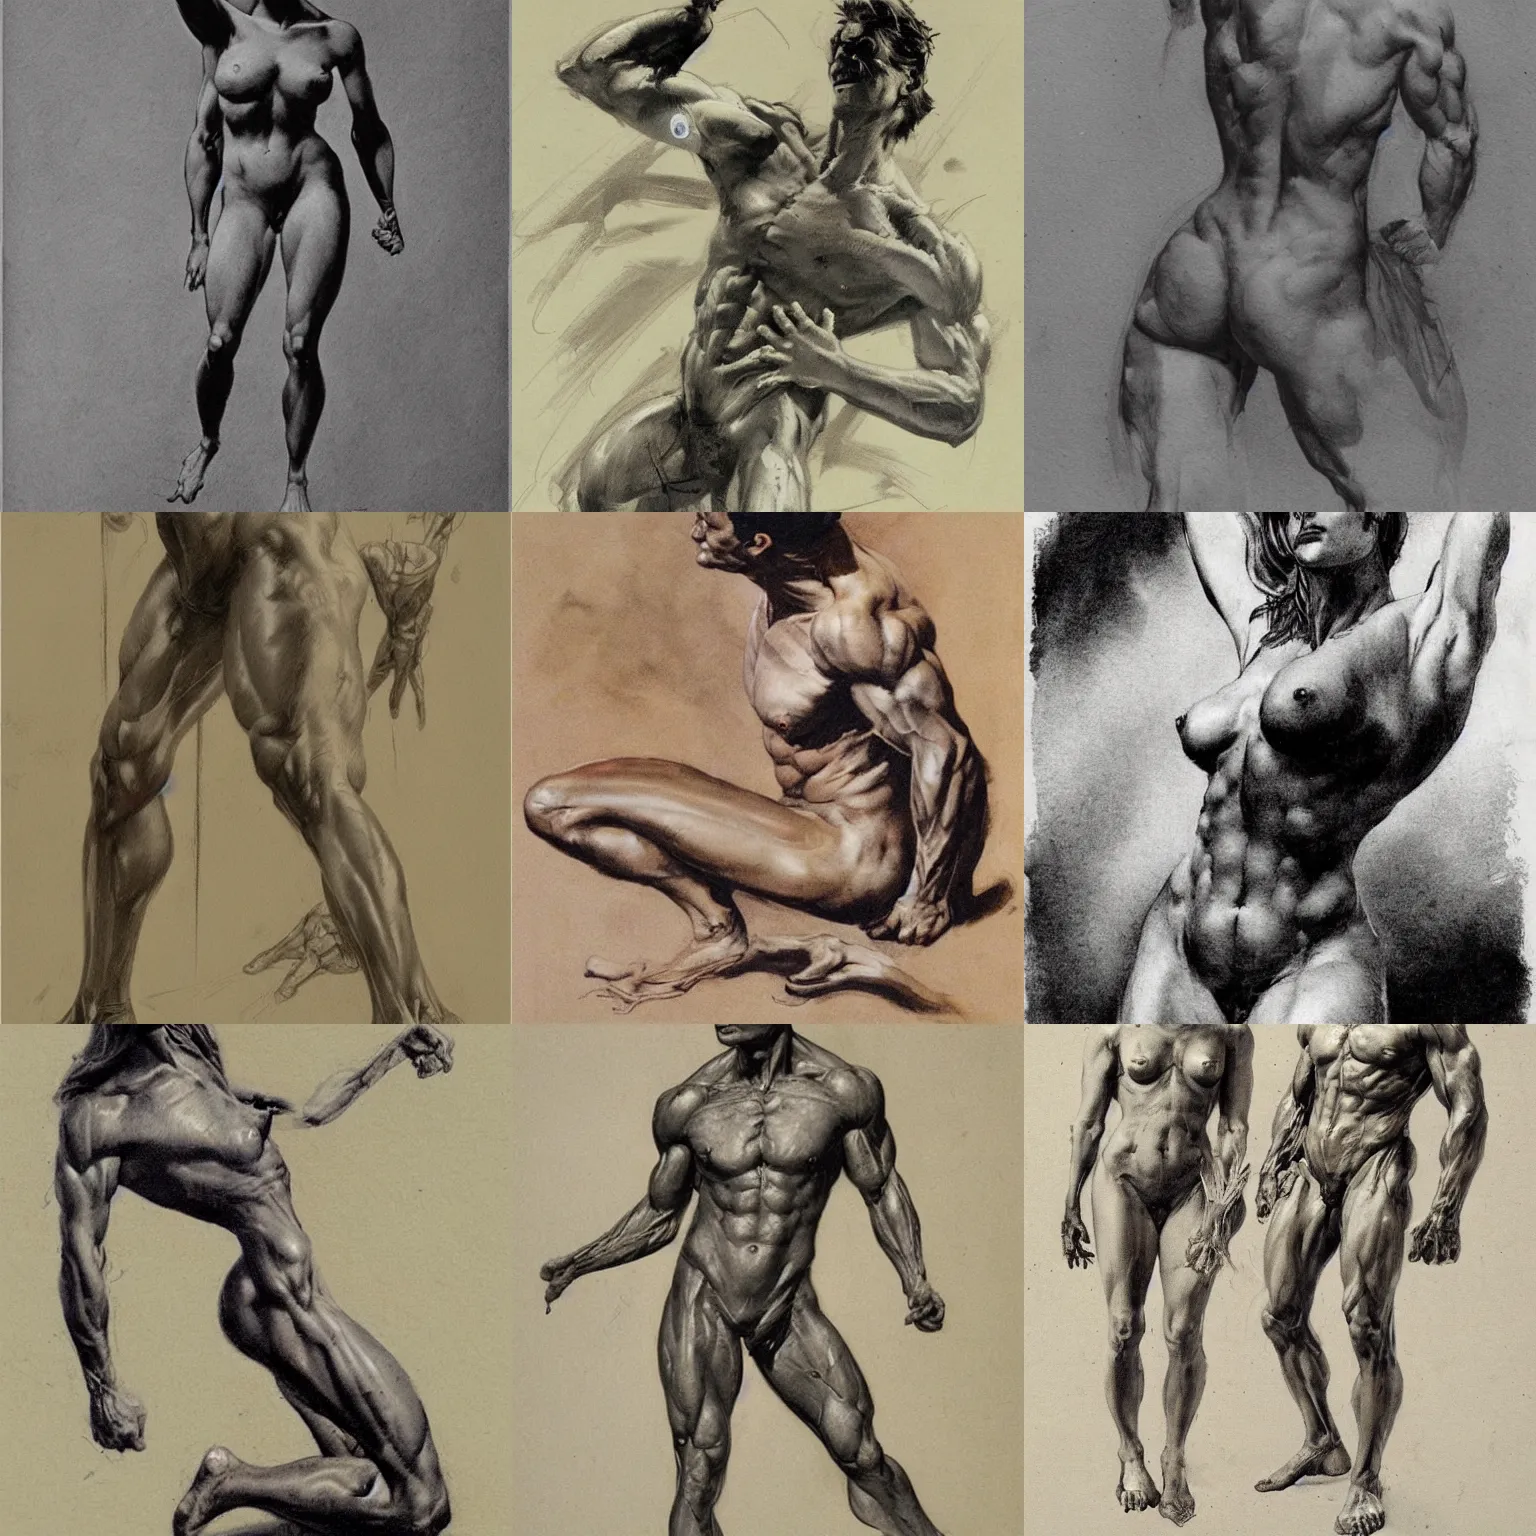 Prompt: anatomy study by frank frazetta